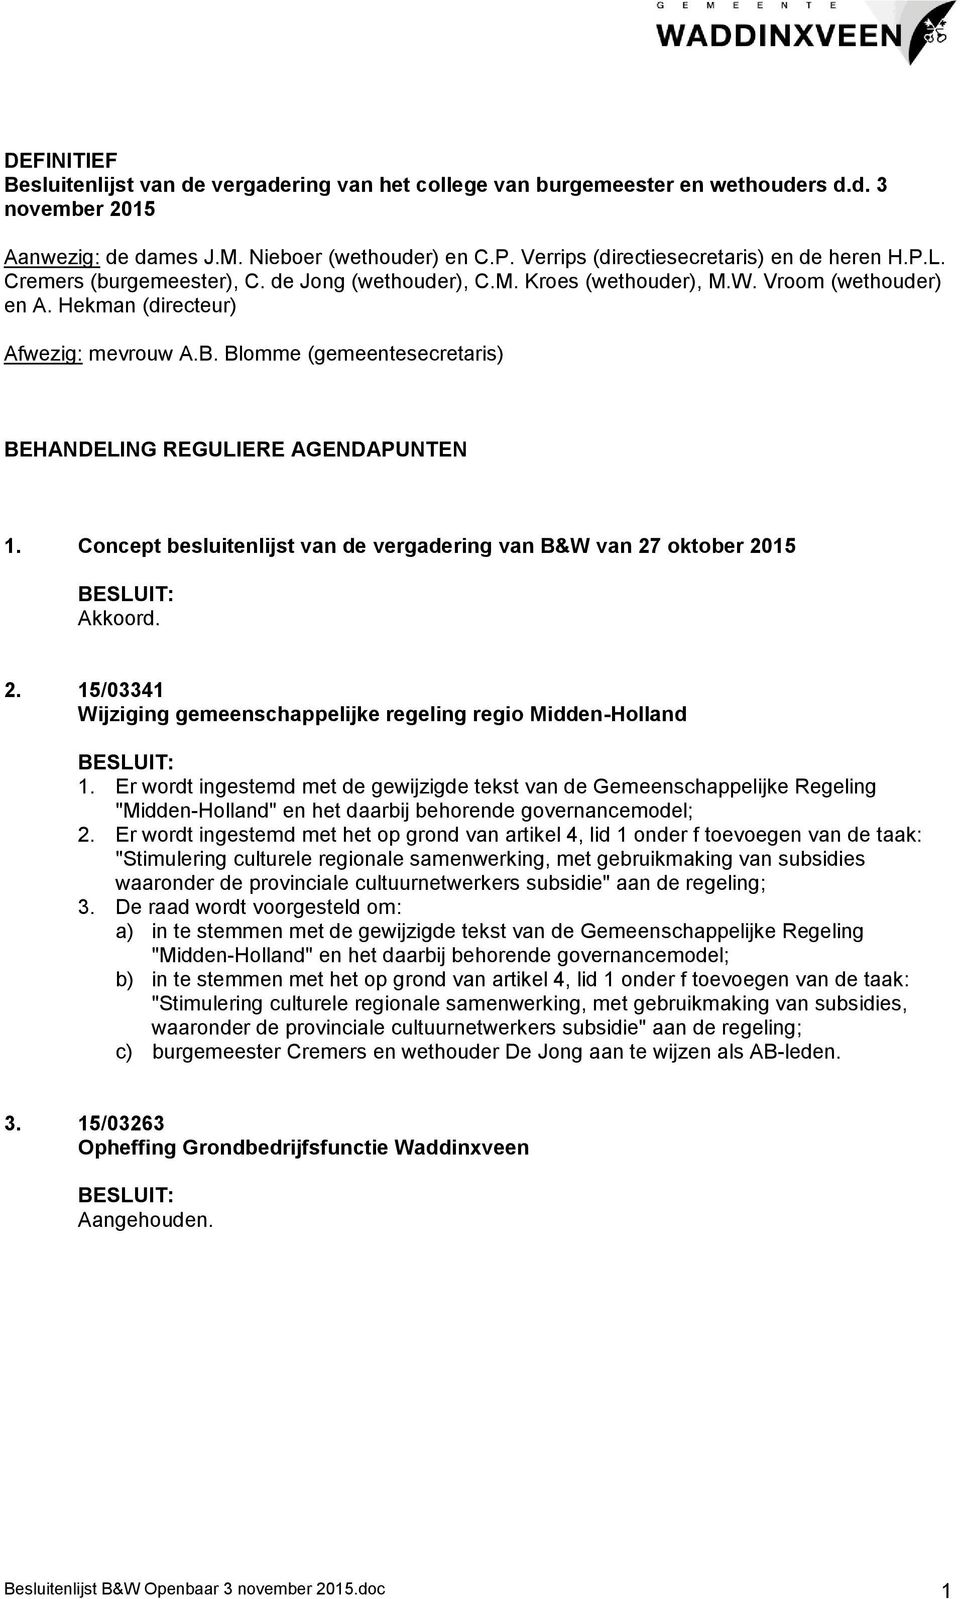 Blomme (gemeentesecretaris) BEHANDELING REGULIERE AGENDAPUNTEN 1. Concept besluitenlijst van de vergadering van B&W van 27 oktober 2015 Akkoord. 2. 15/03341 Wijziging gemeenschappelijke regeling regio Midden-Holland 1.